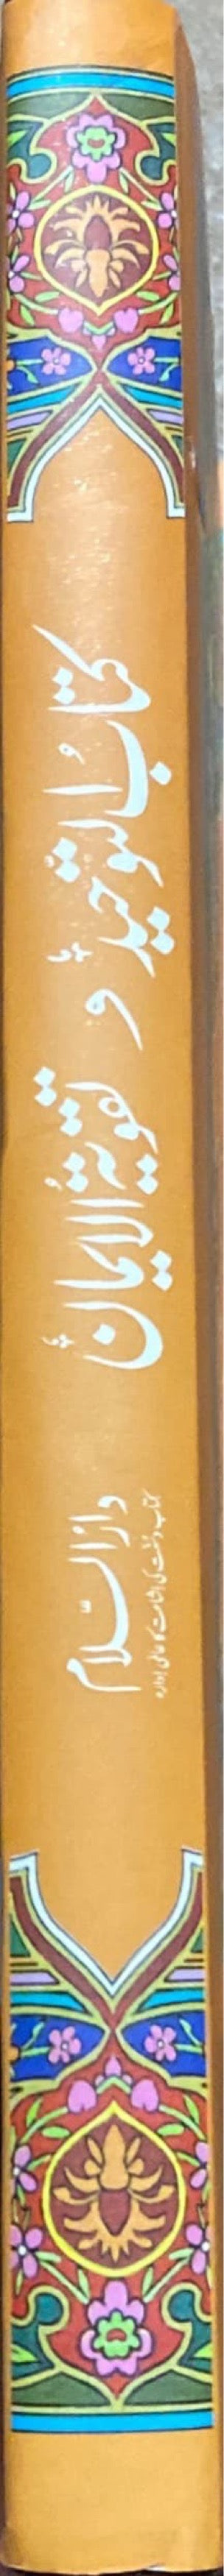 Urdu Kitab At Tawhid